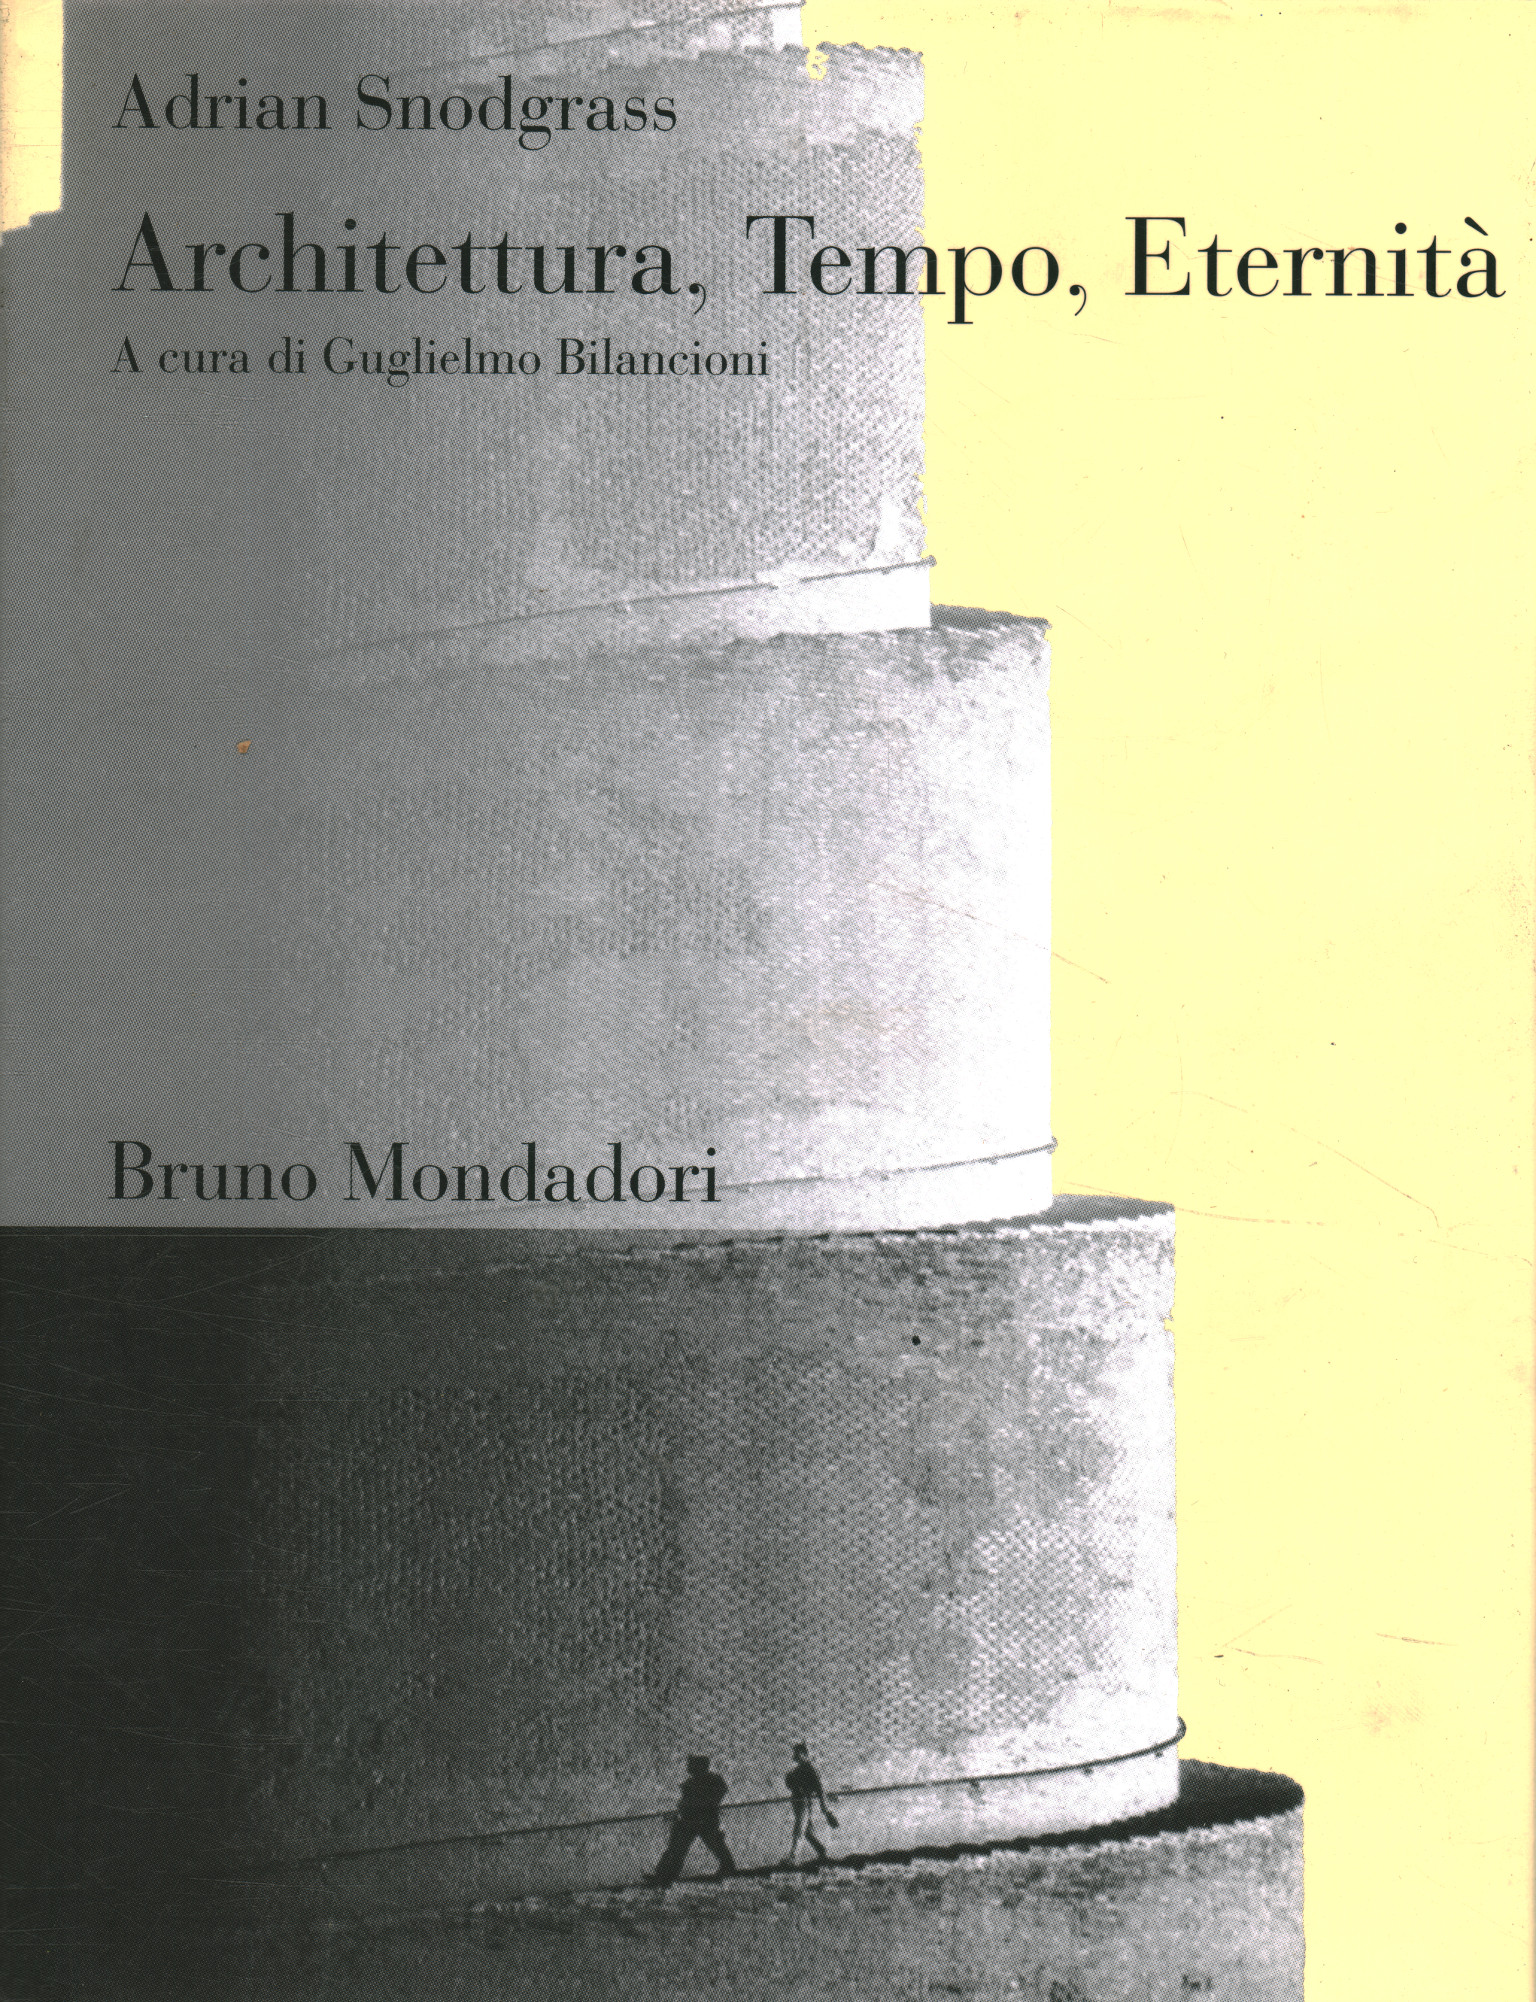 Architettura Tempo, Eternità,Architettura Tempo, Eternità